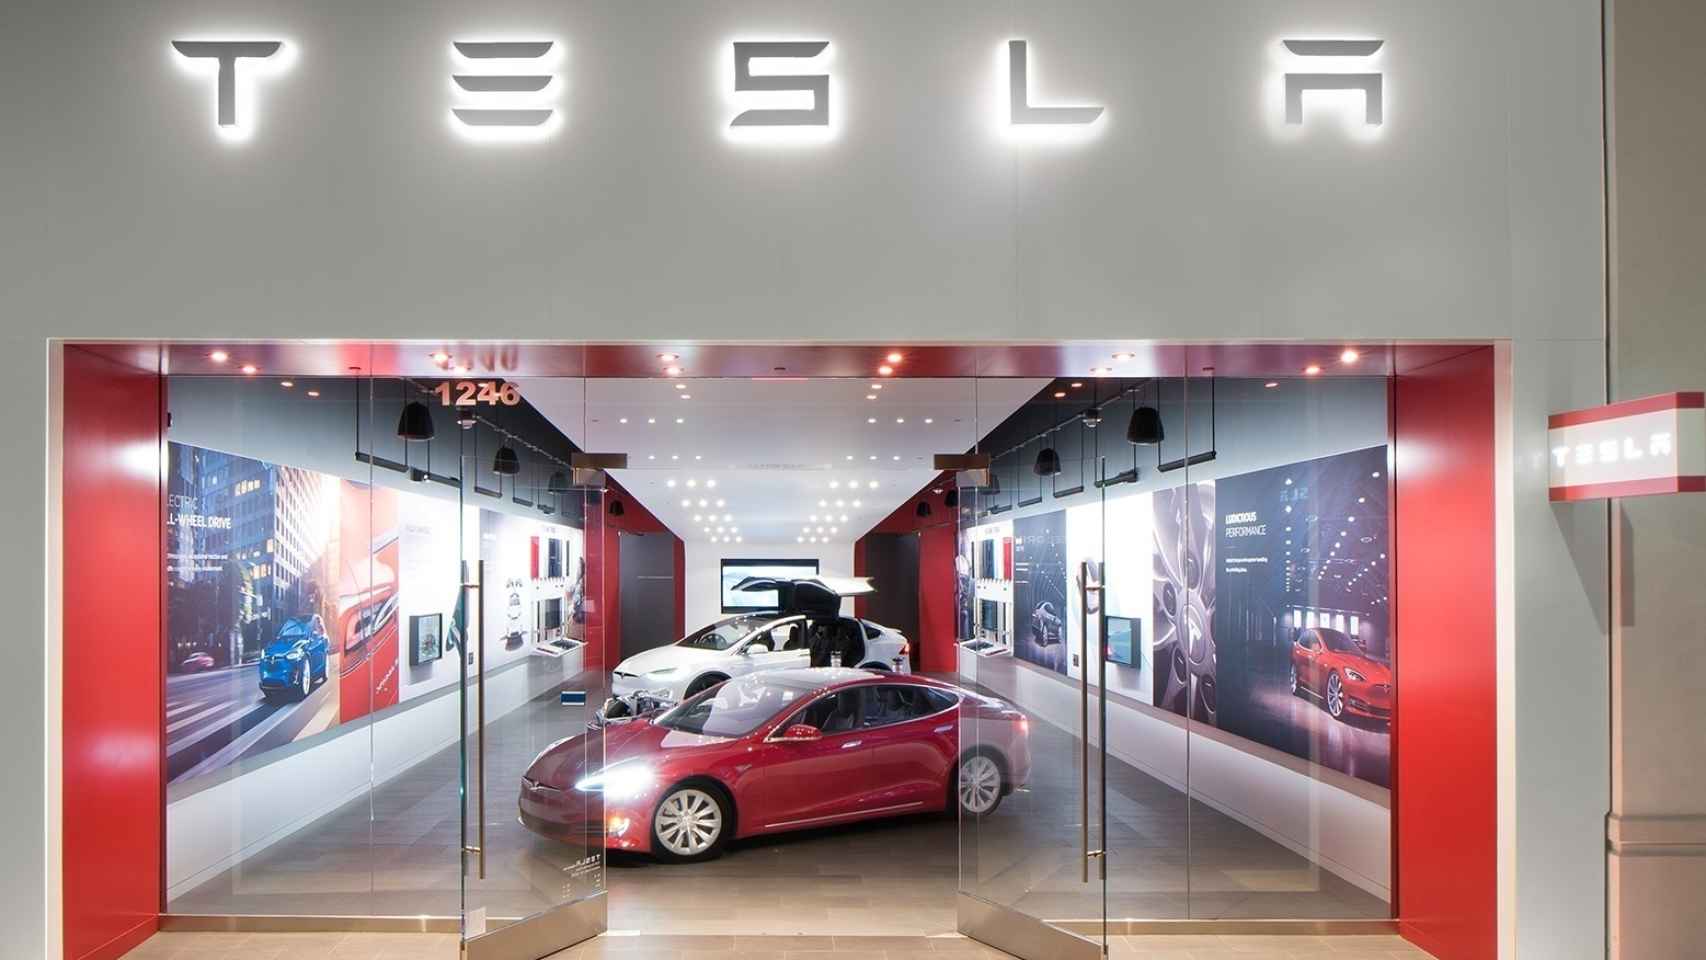 Imagen de un establecimiento de Tesla.